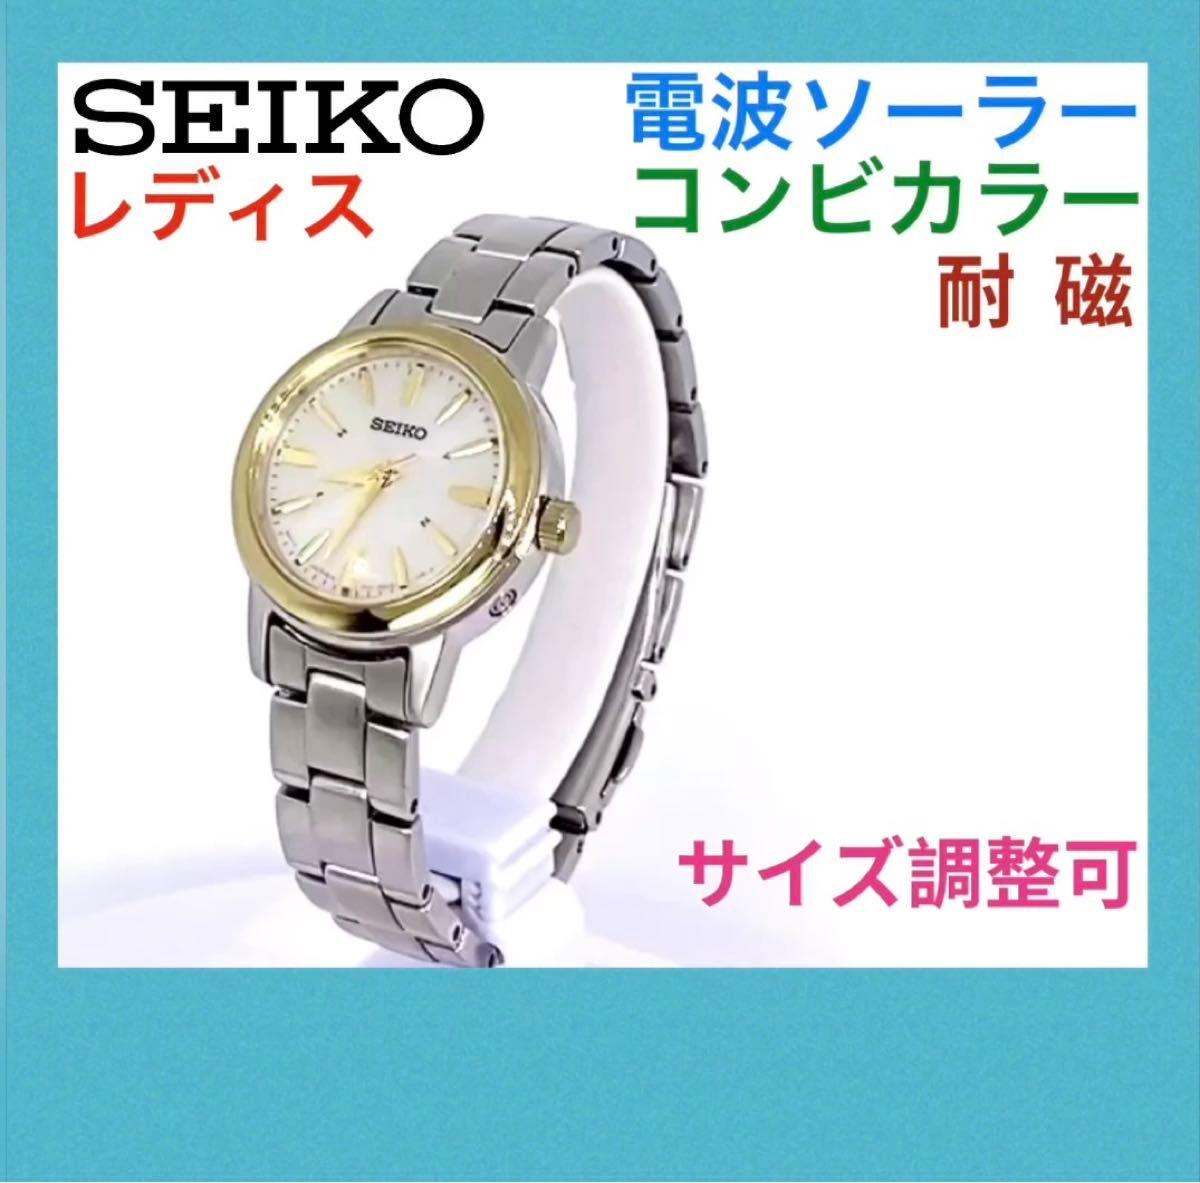 SEIKO☆セイコー☆電波ソーラー☆腕時計☆レディス☆軽量☆耐磁☆コンビカラー☆シャンパンゴールド文字盤×ゴールド針☆55000円